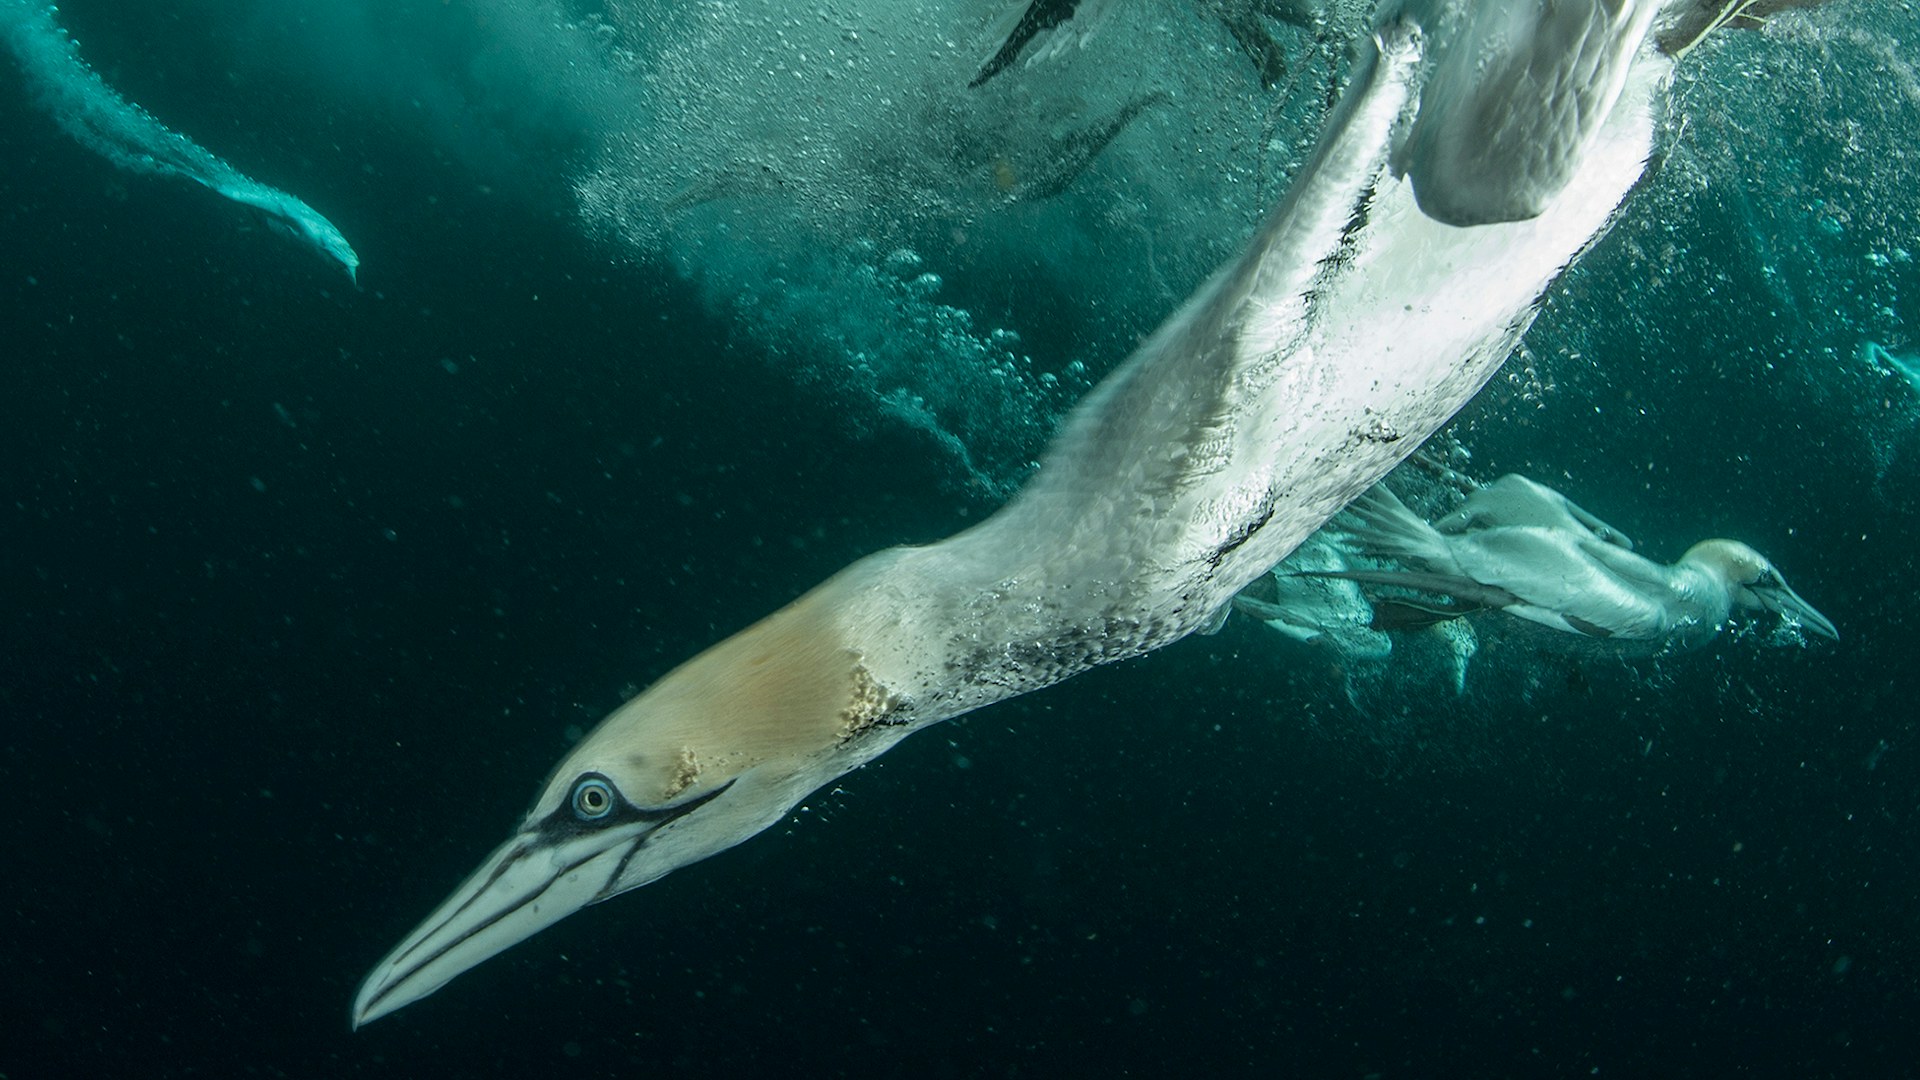 a gannet dives for dinner